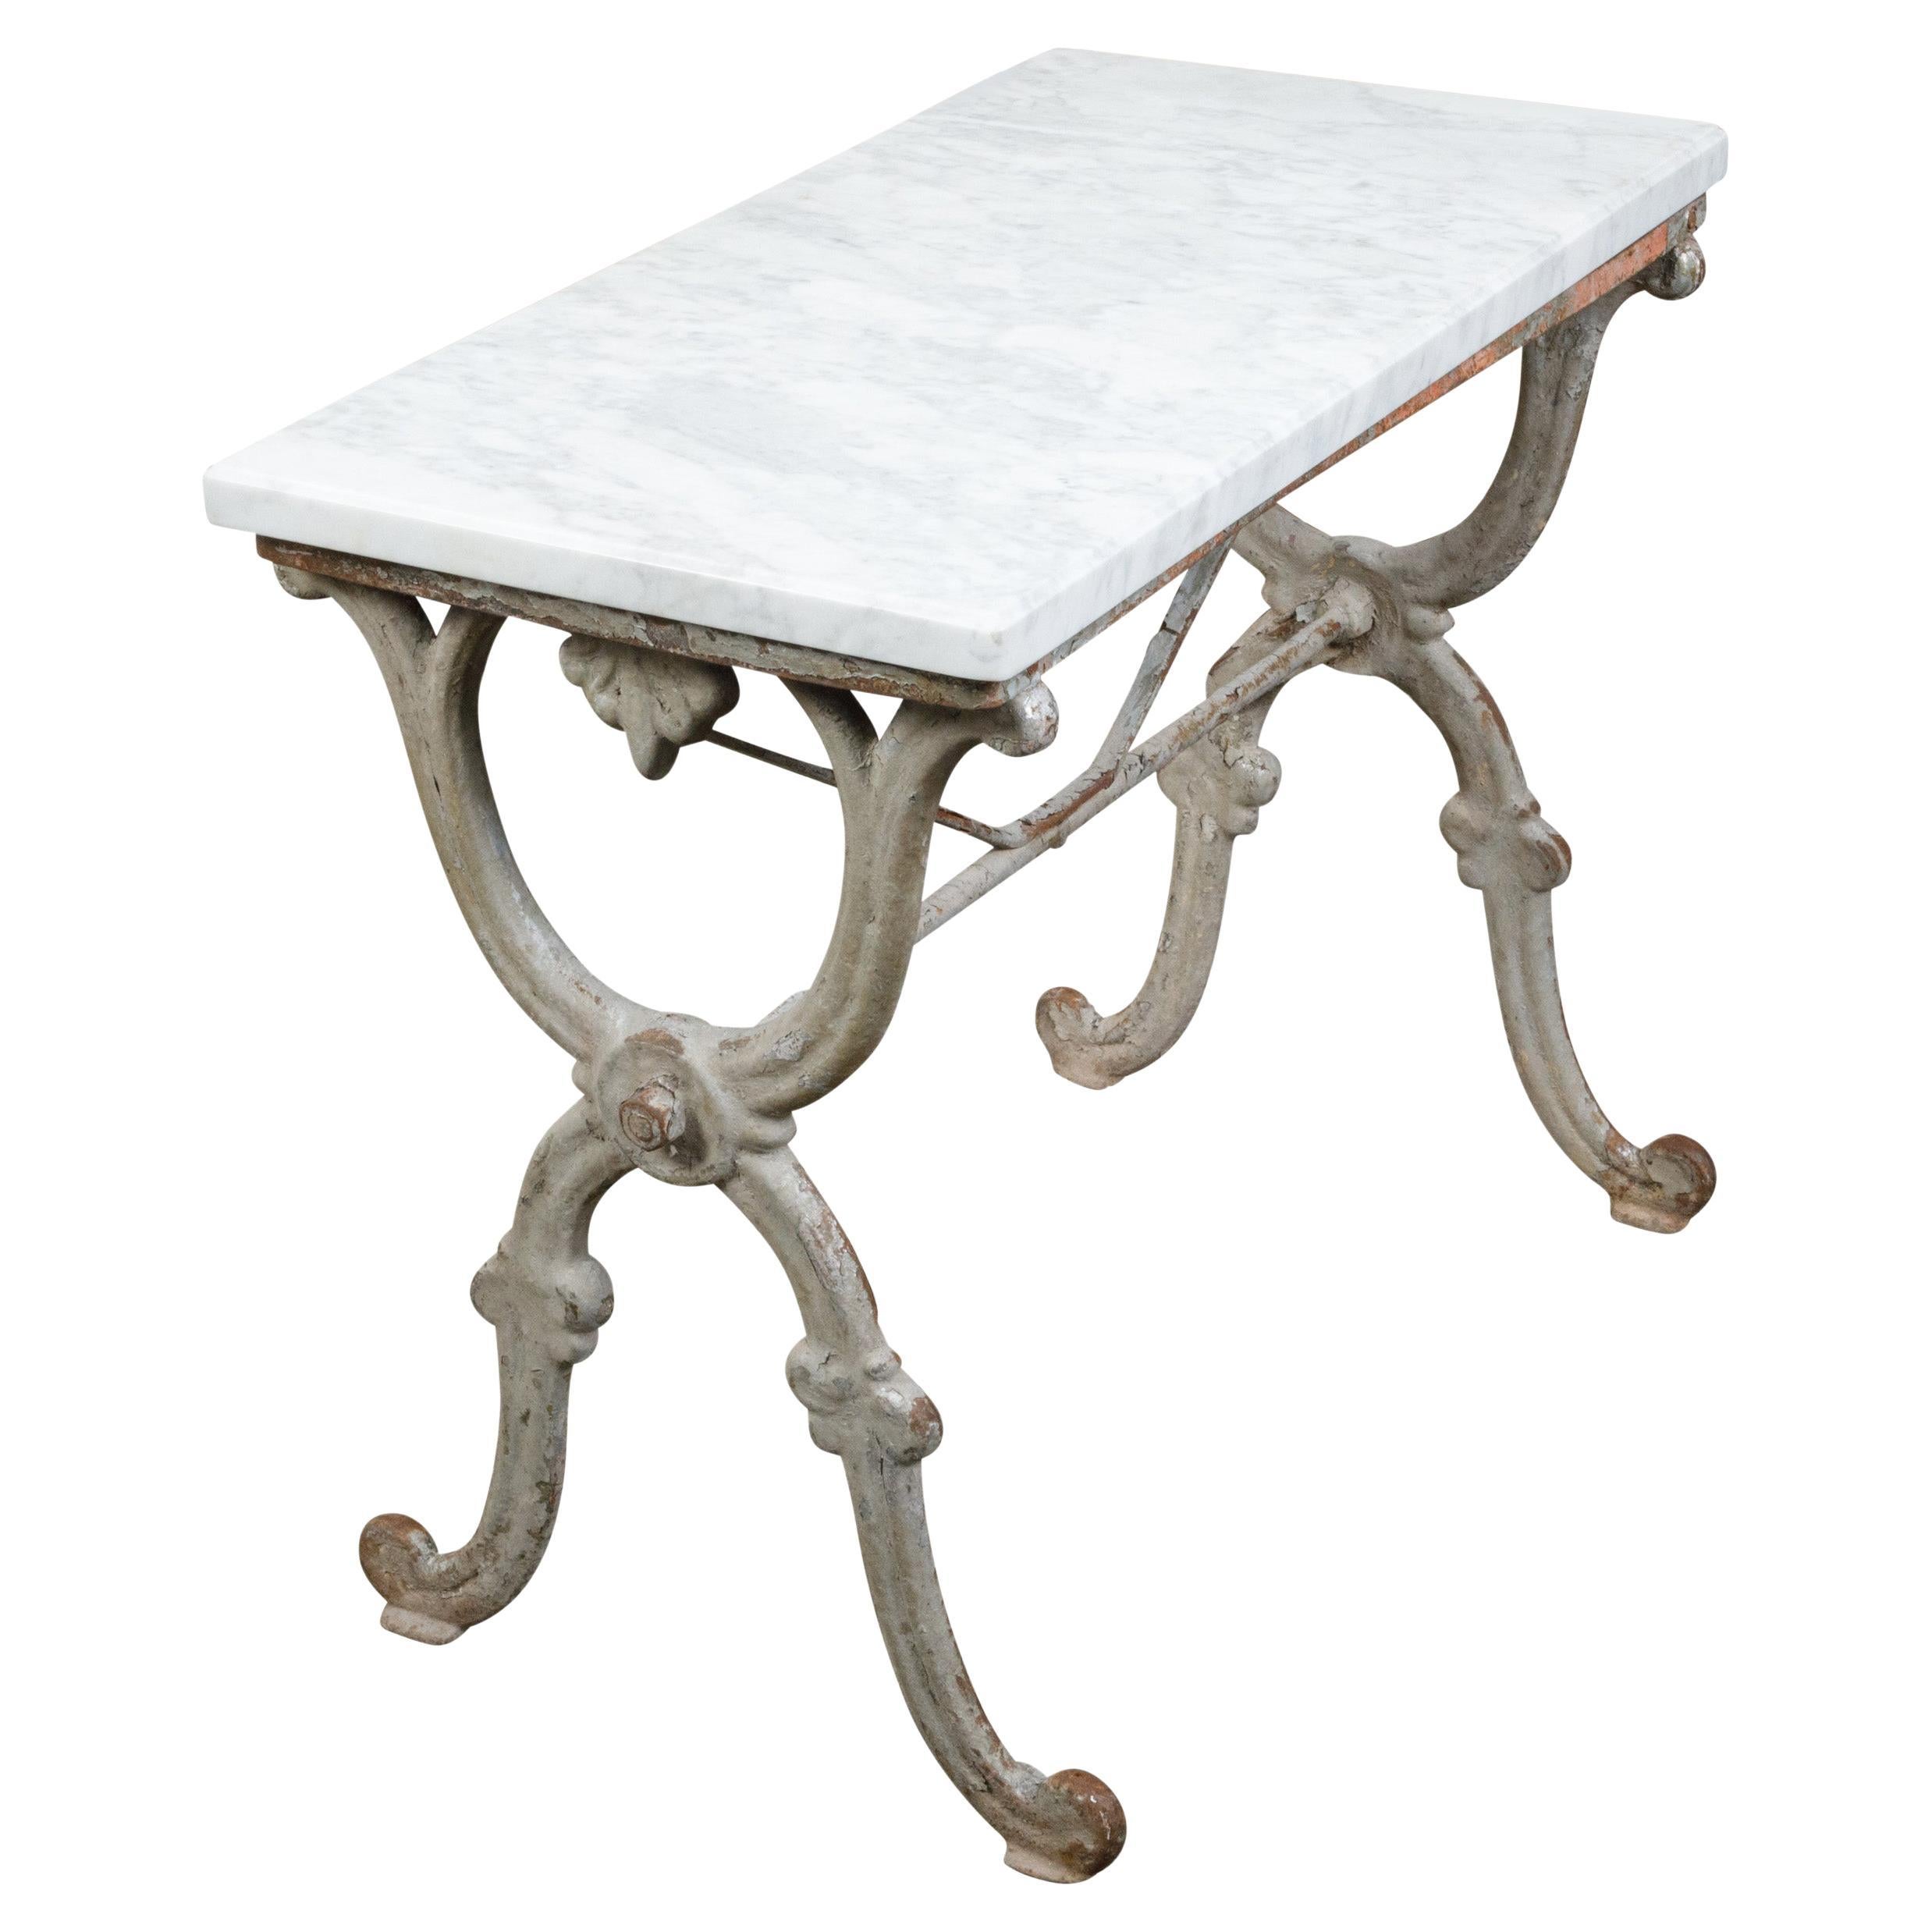 Table console française du 19ème siècle avec plateau en marbre blanc et base en forme de X